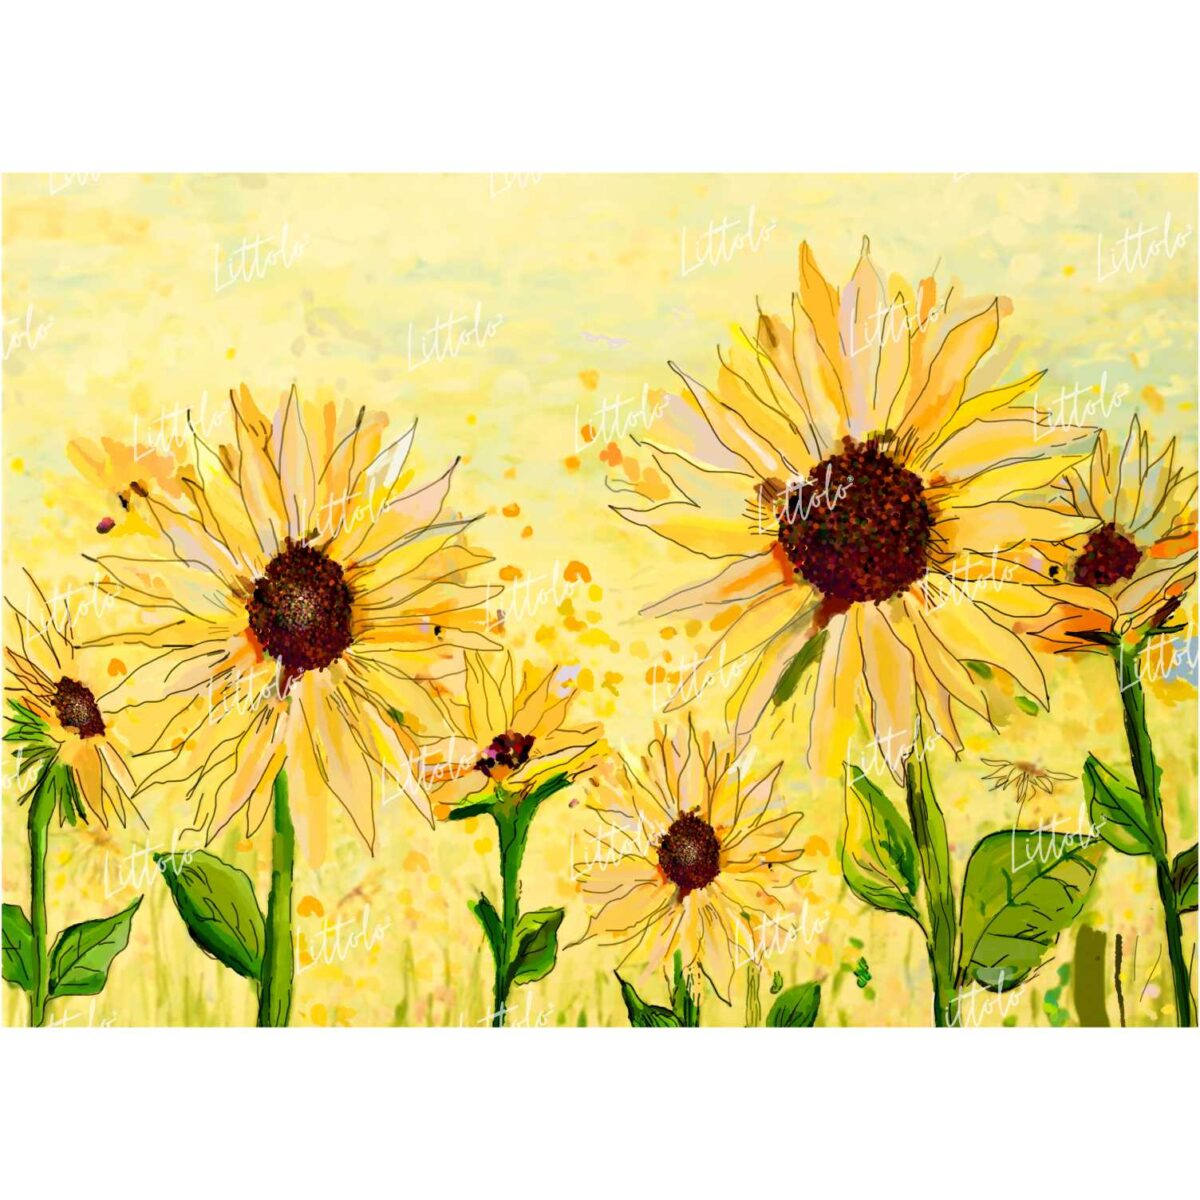 LB0183 Sunflowers Floral & Fine Arts Backdrop